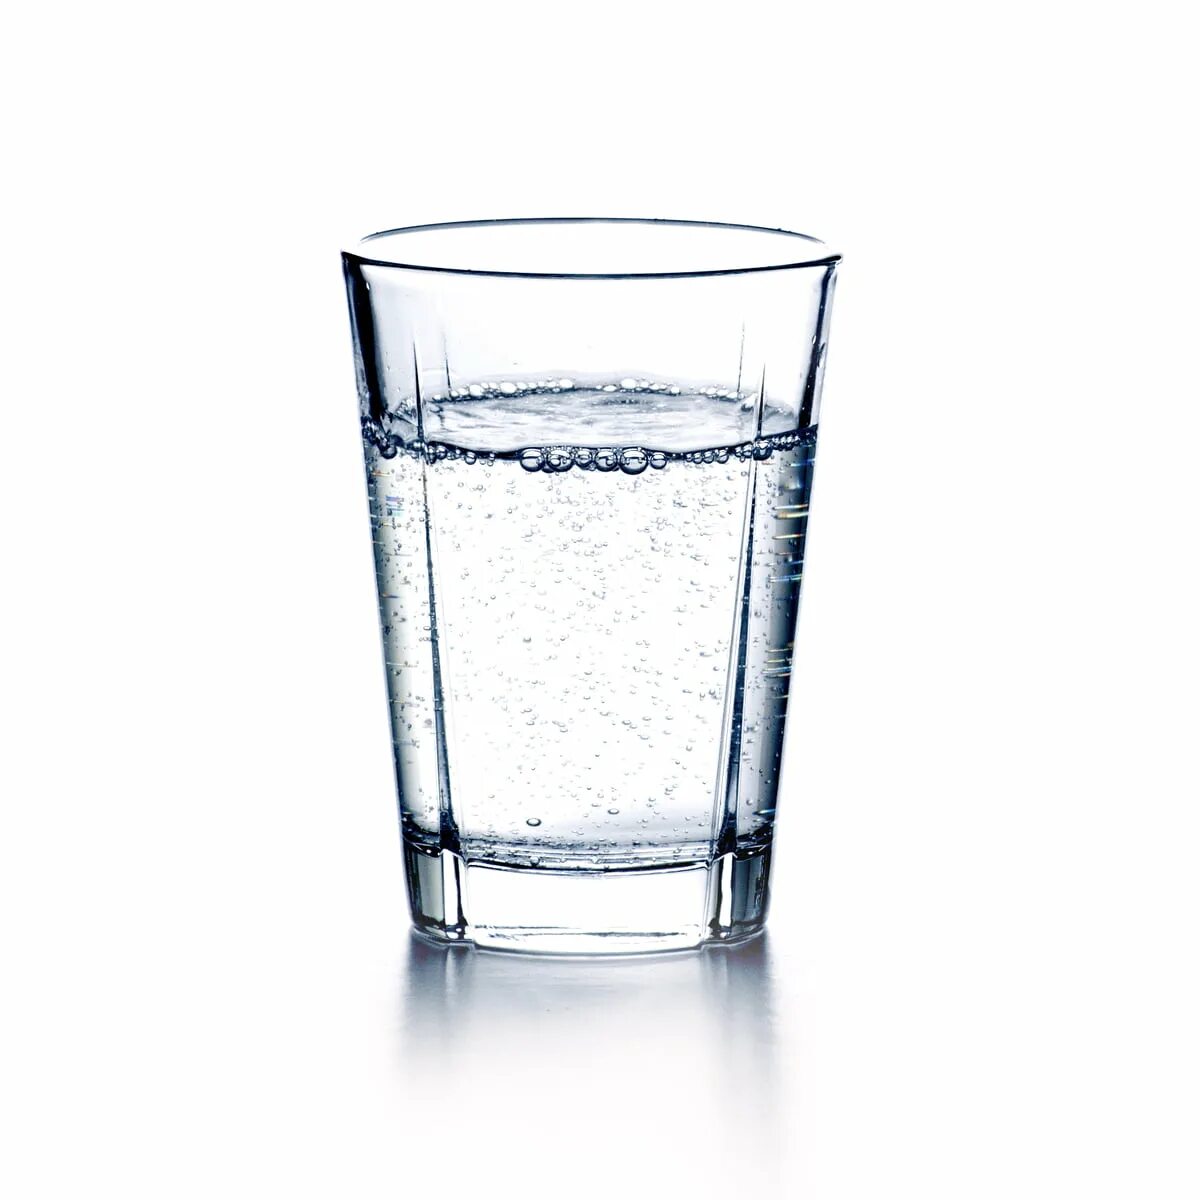 Почему стакан прозрачный. Стакан воды. Прозрачная вода в стакане. Прозрачный стакан. Стаканчик с водой.